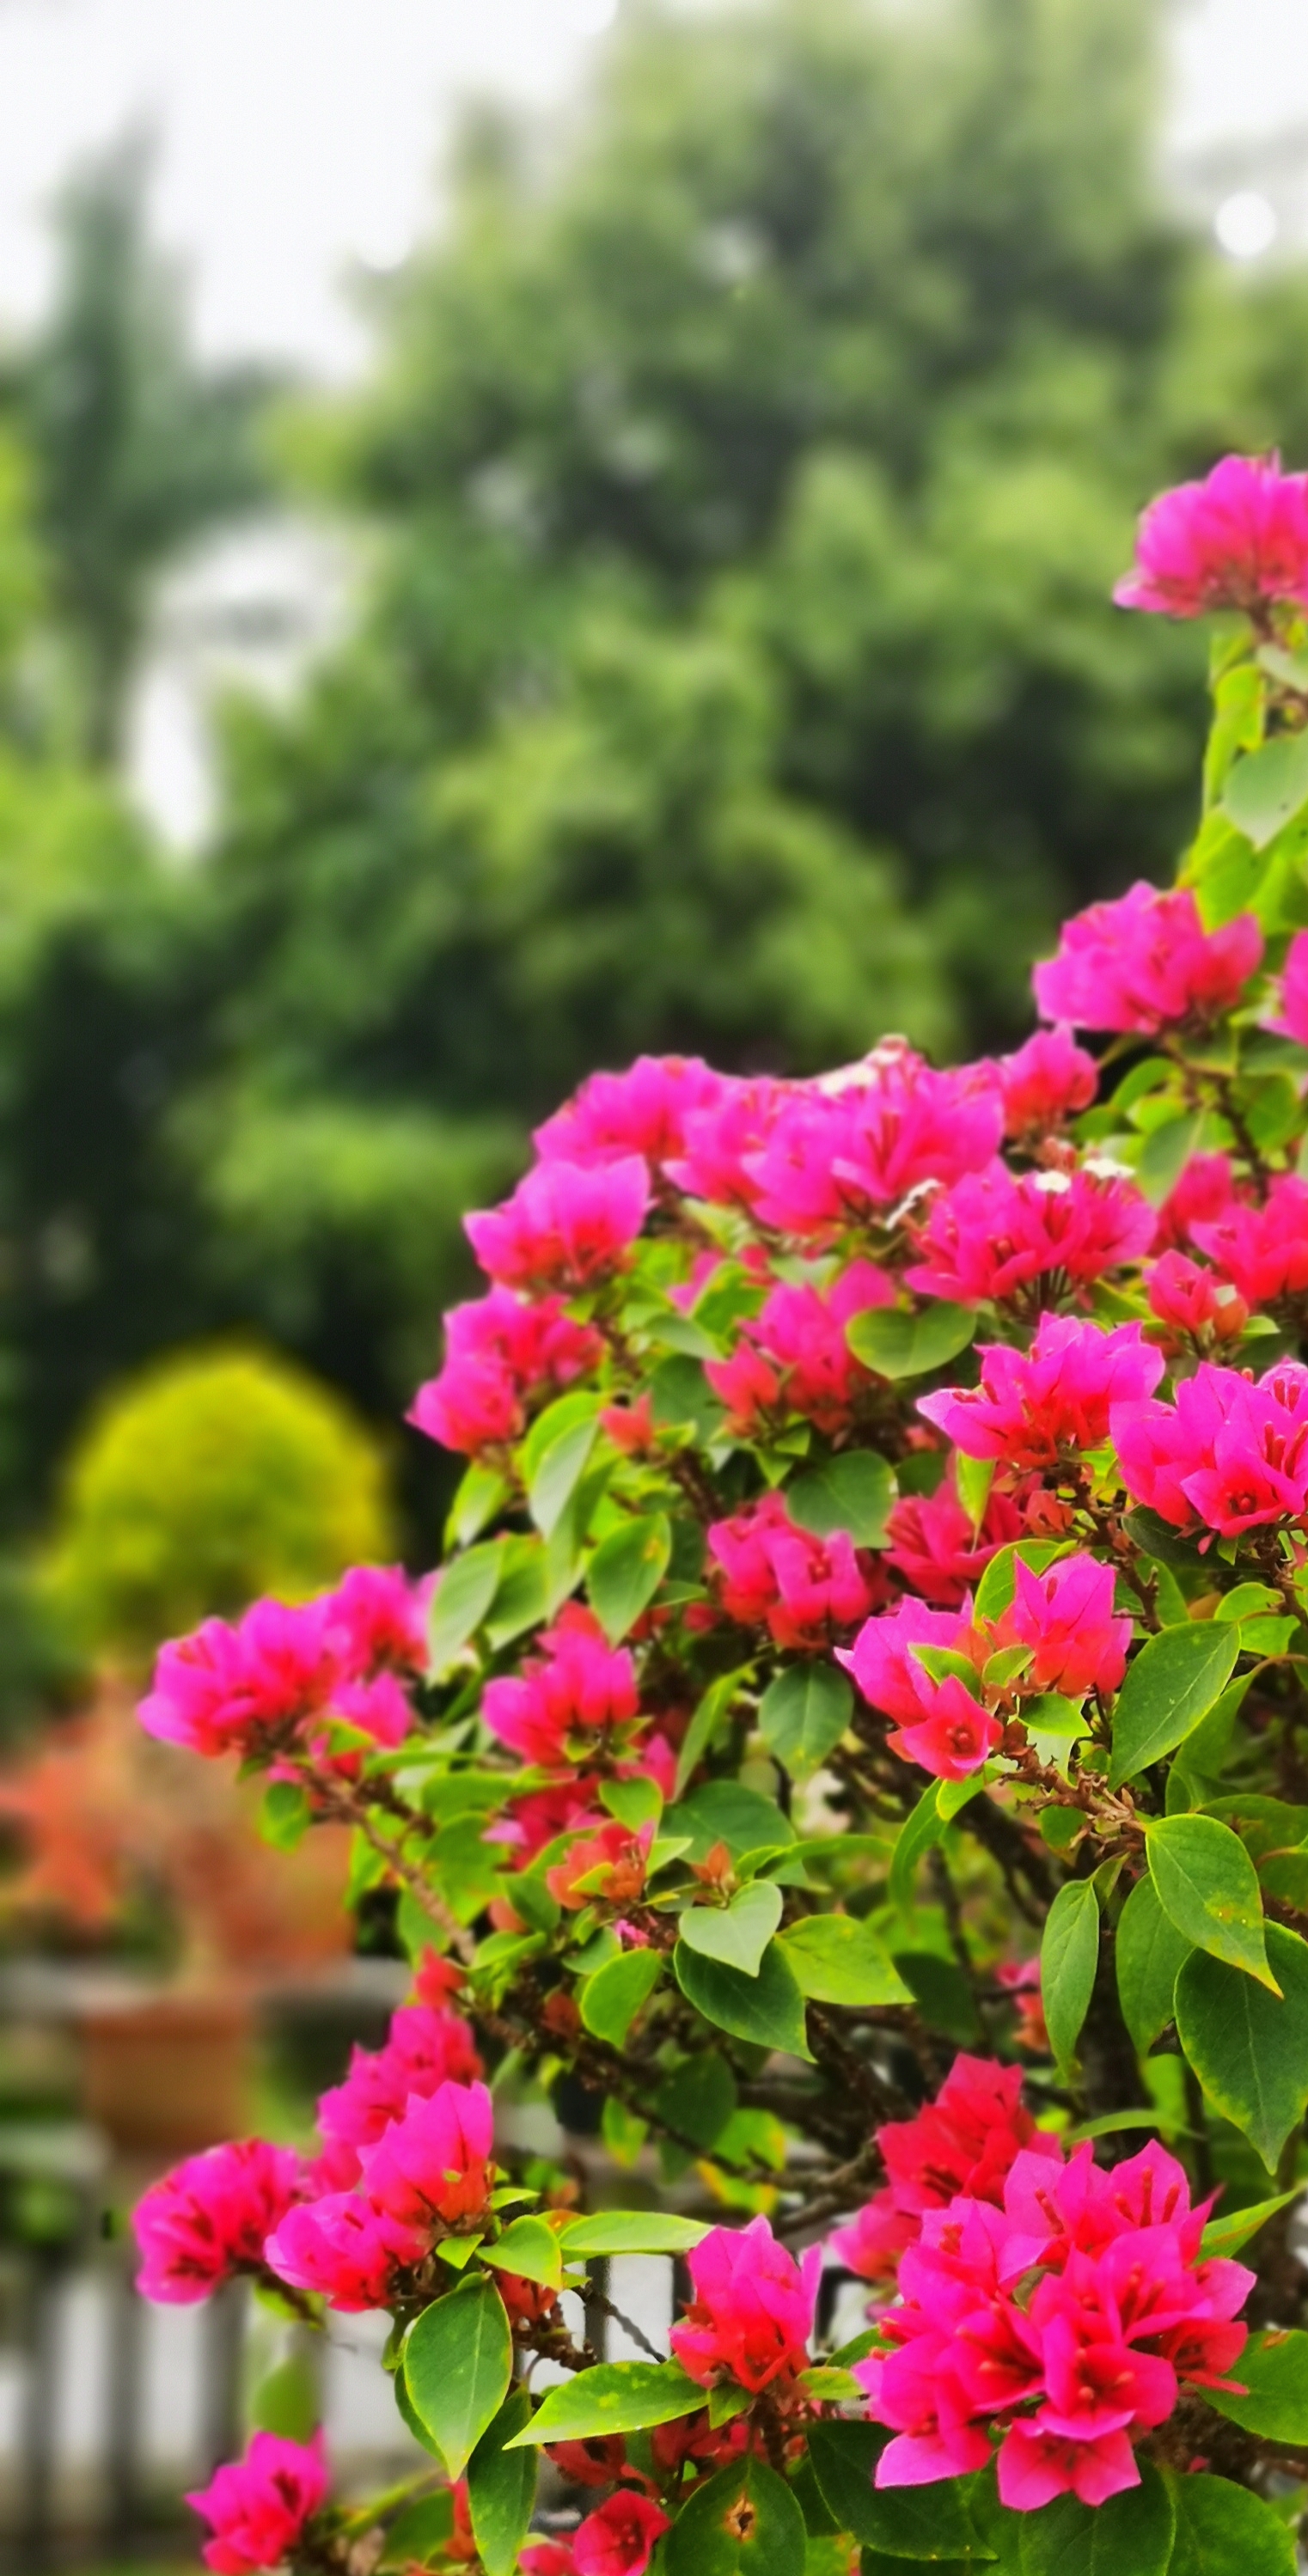 手机摄影课程:春天花会开,深圳公园里的那些花儿怎么拍?